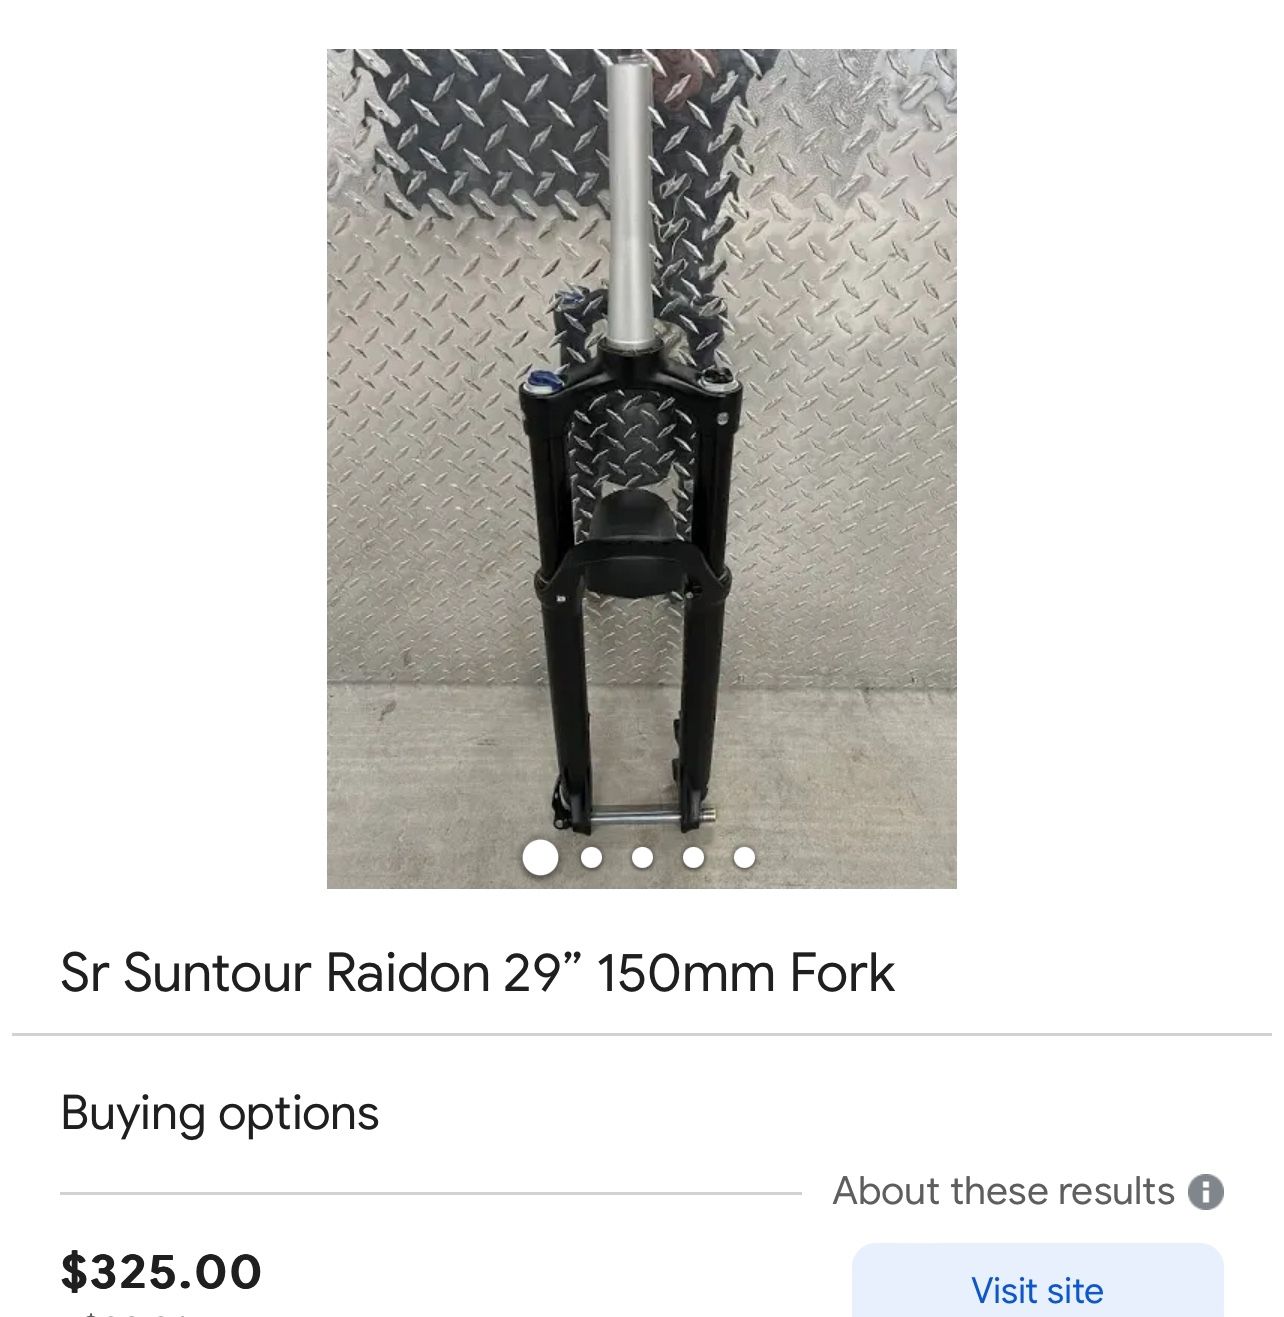 Sr Suntour Raidon 29” 150mm Fork